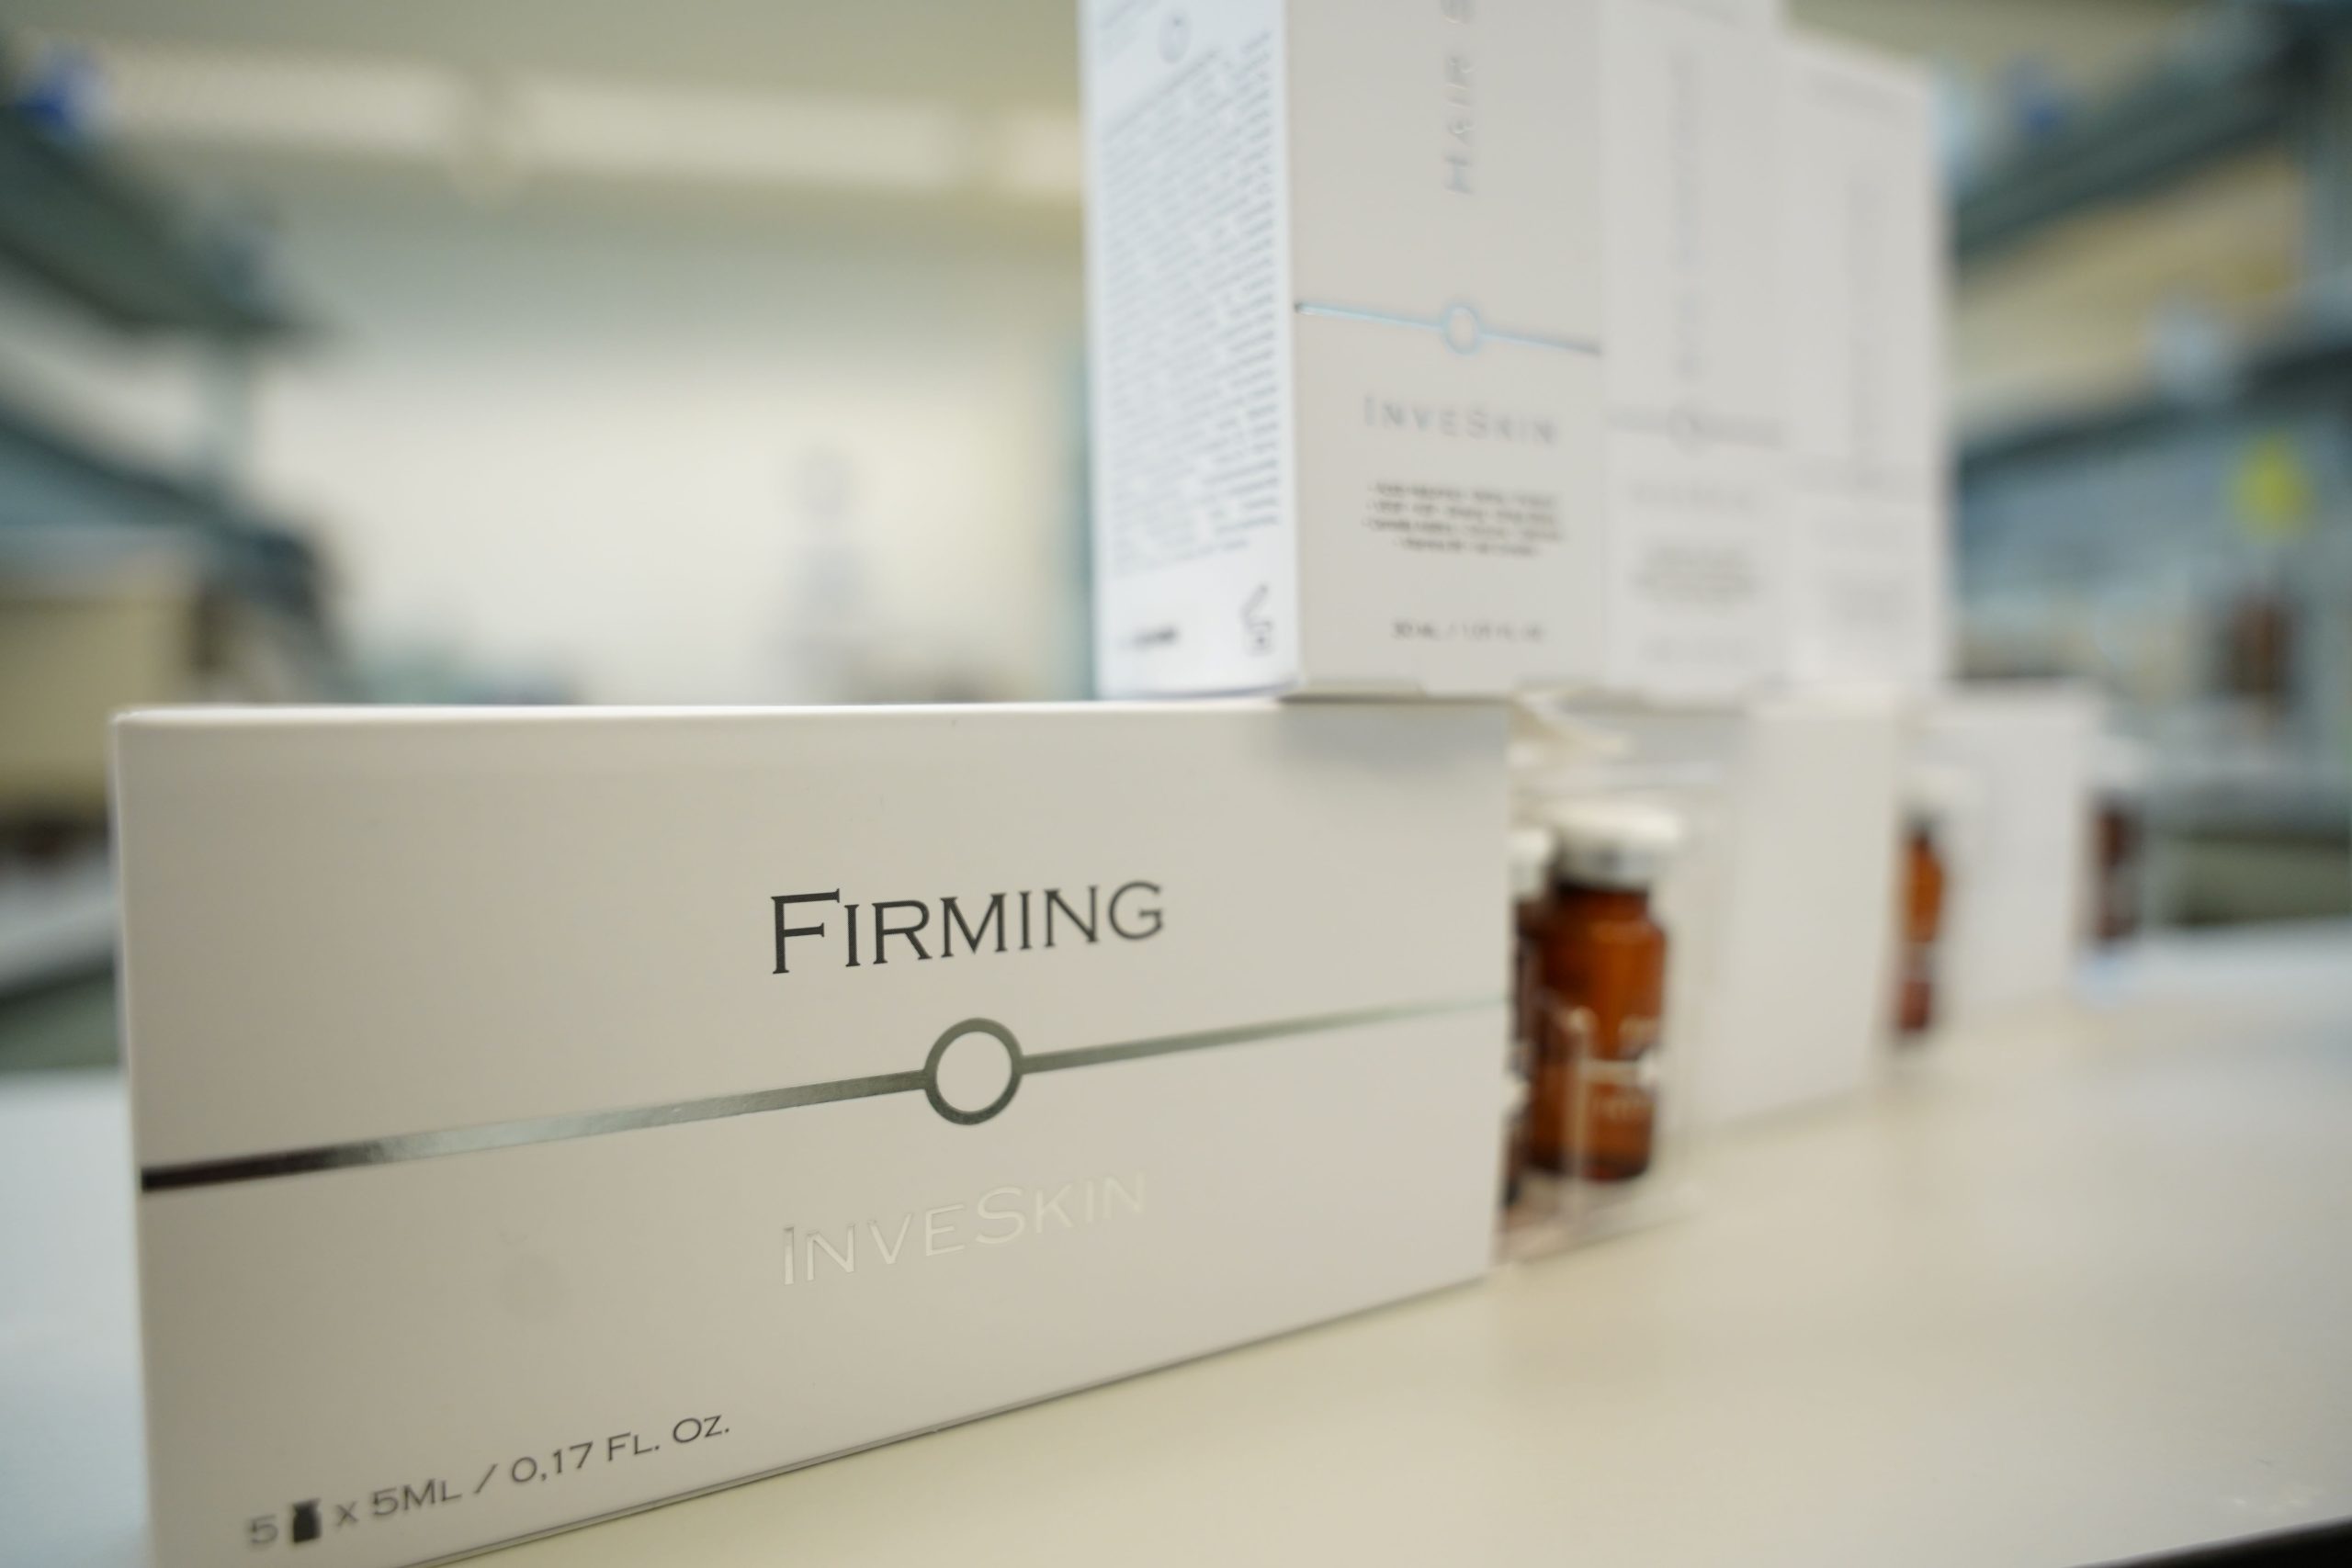 La granadina Inves Biofarm llega con sus cosméticos y productos sanitarios a mercados americanos y asiáticos